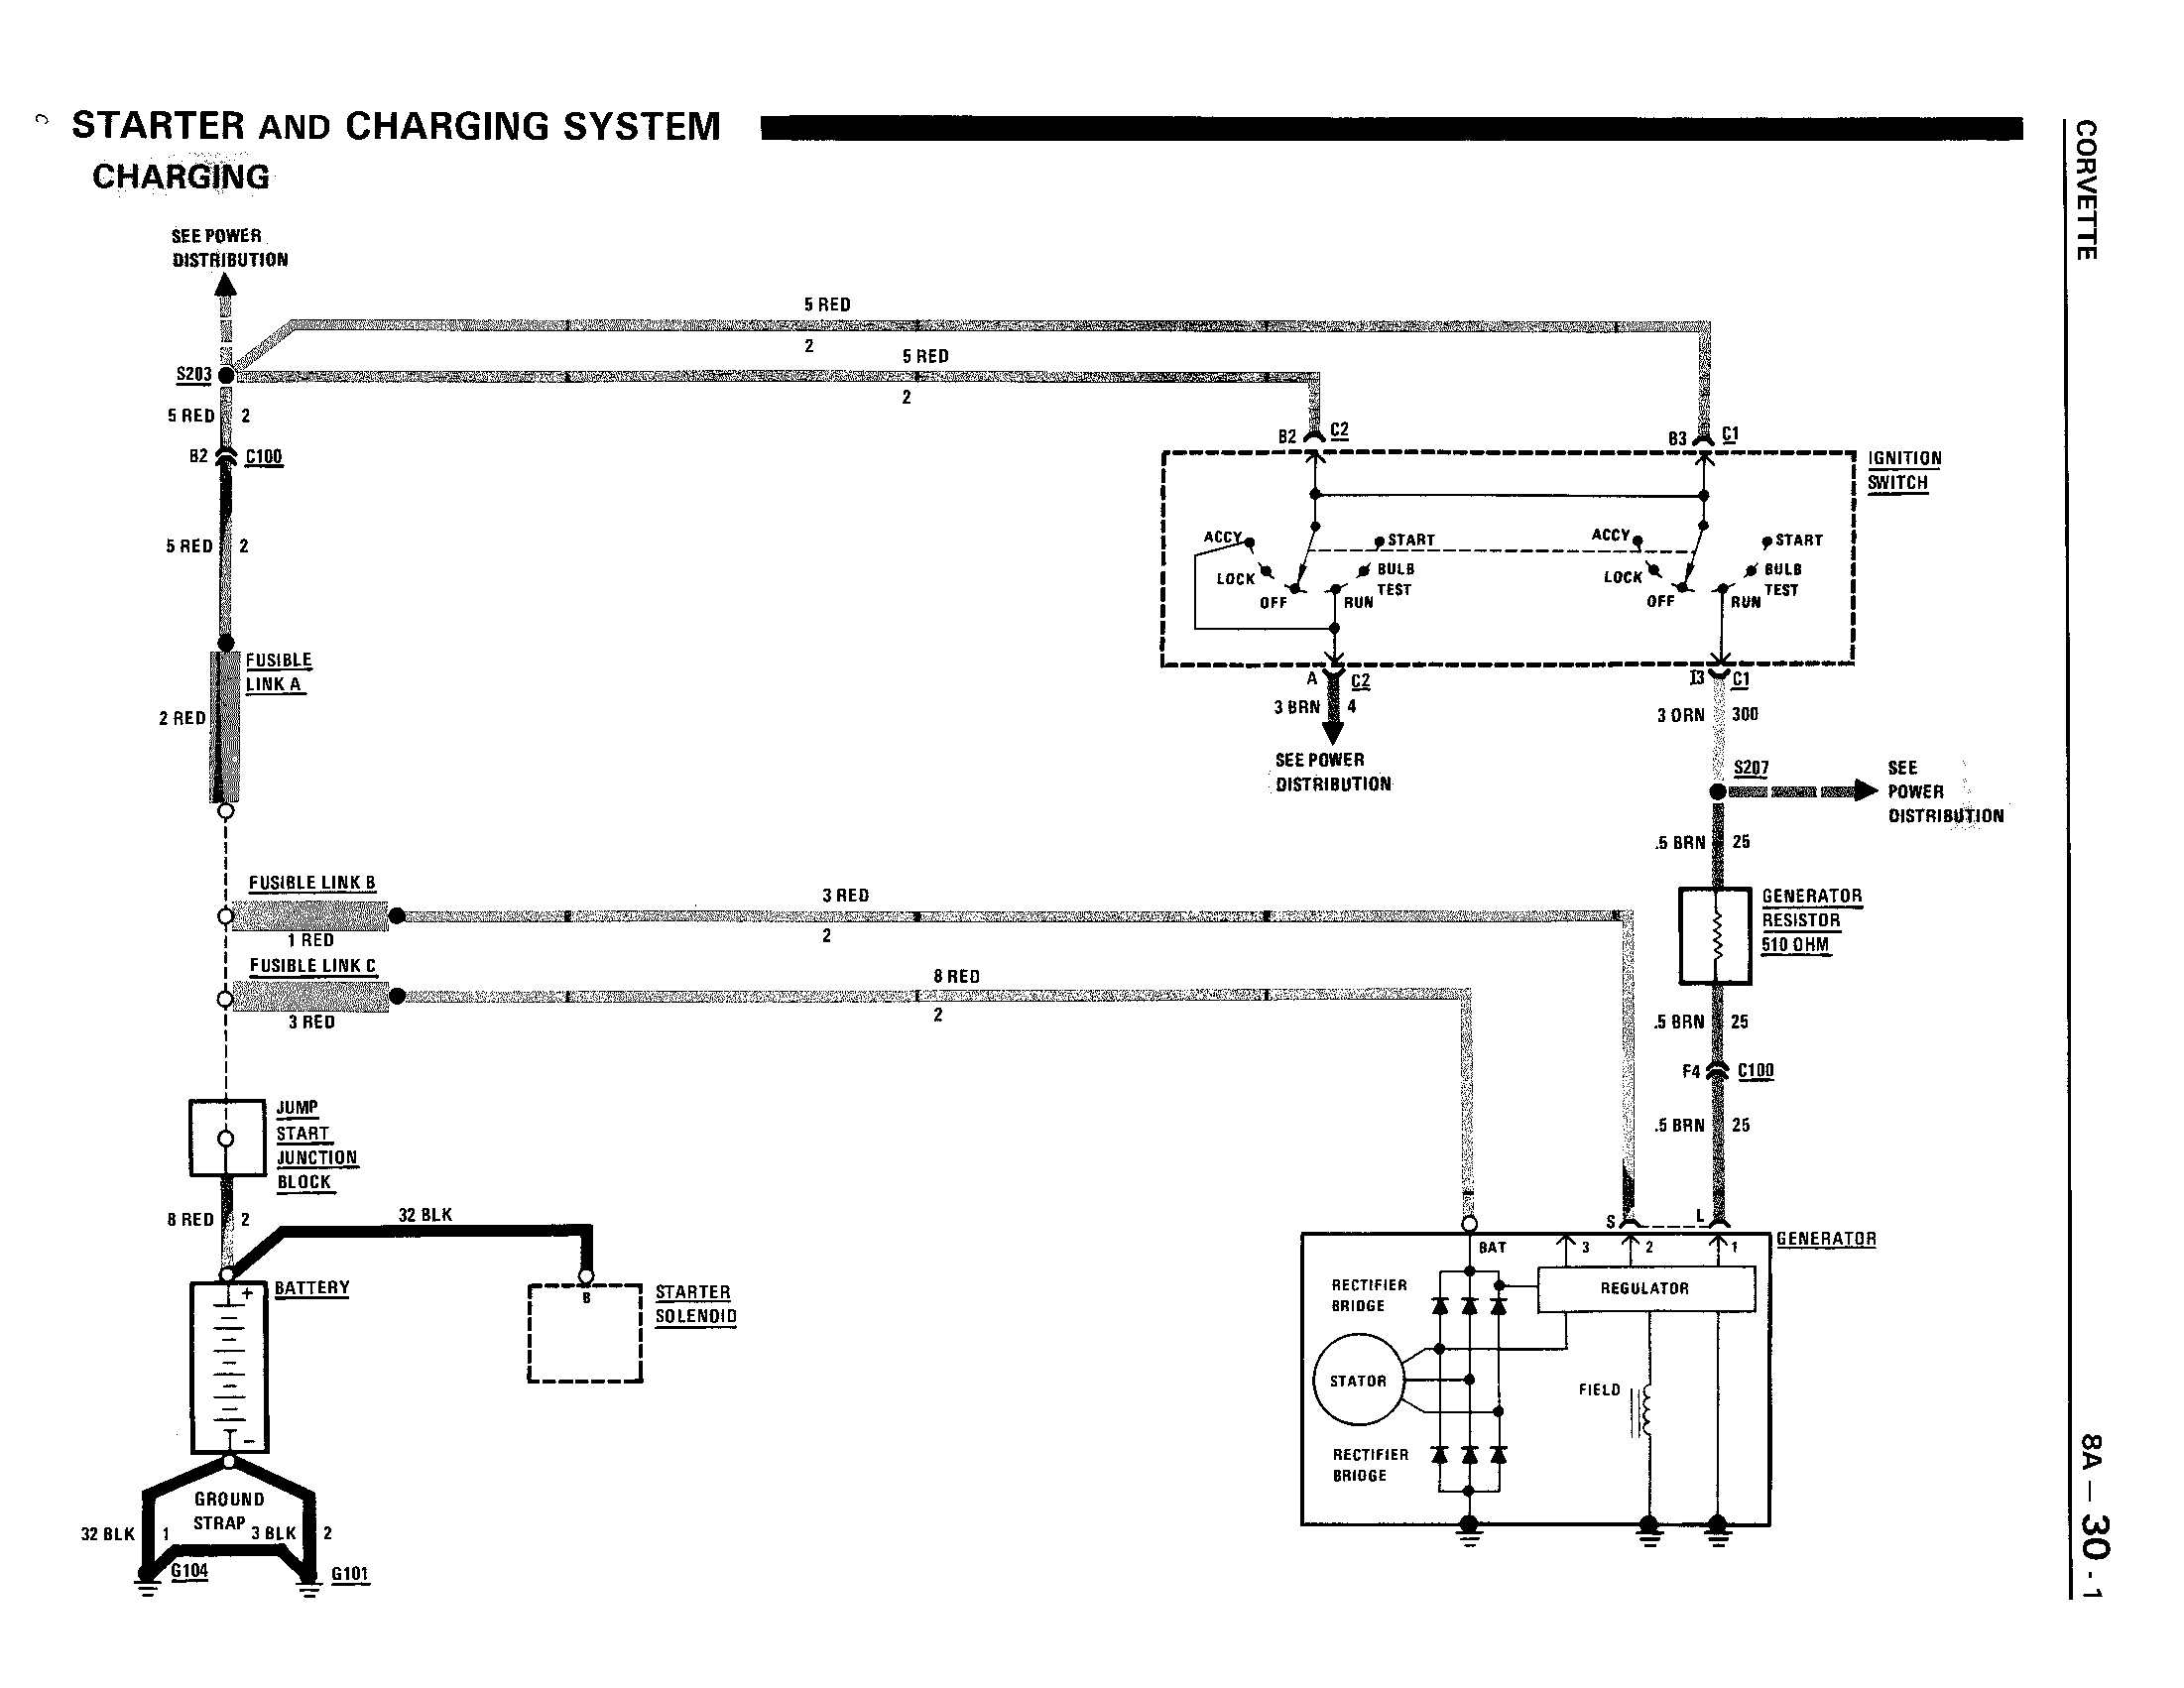 Alternator wiring diagram - CorvetteForum - Chevrolet Corvette Forum  Discussion KZ650 Wiring-Diagram Corvette Forum